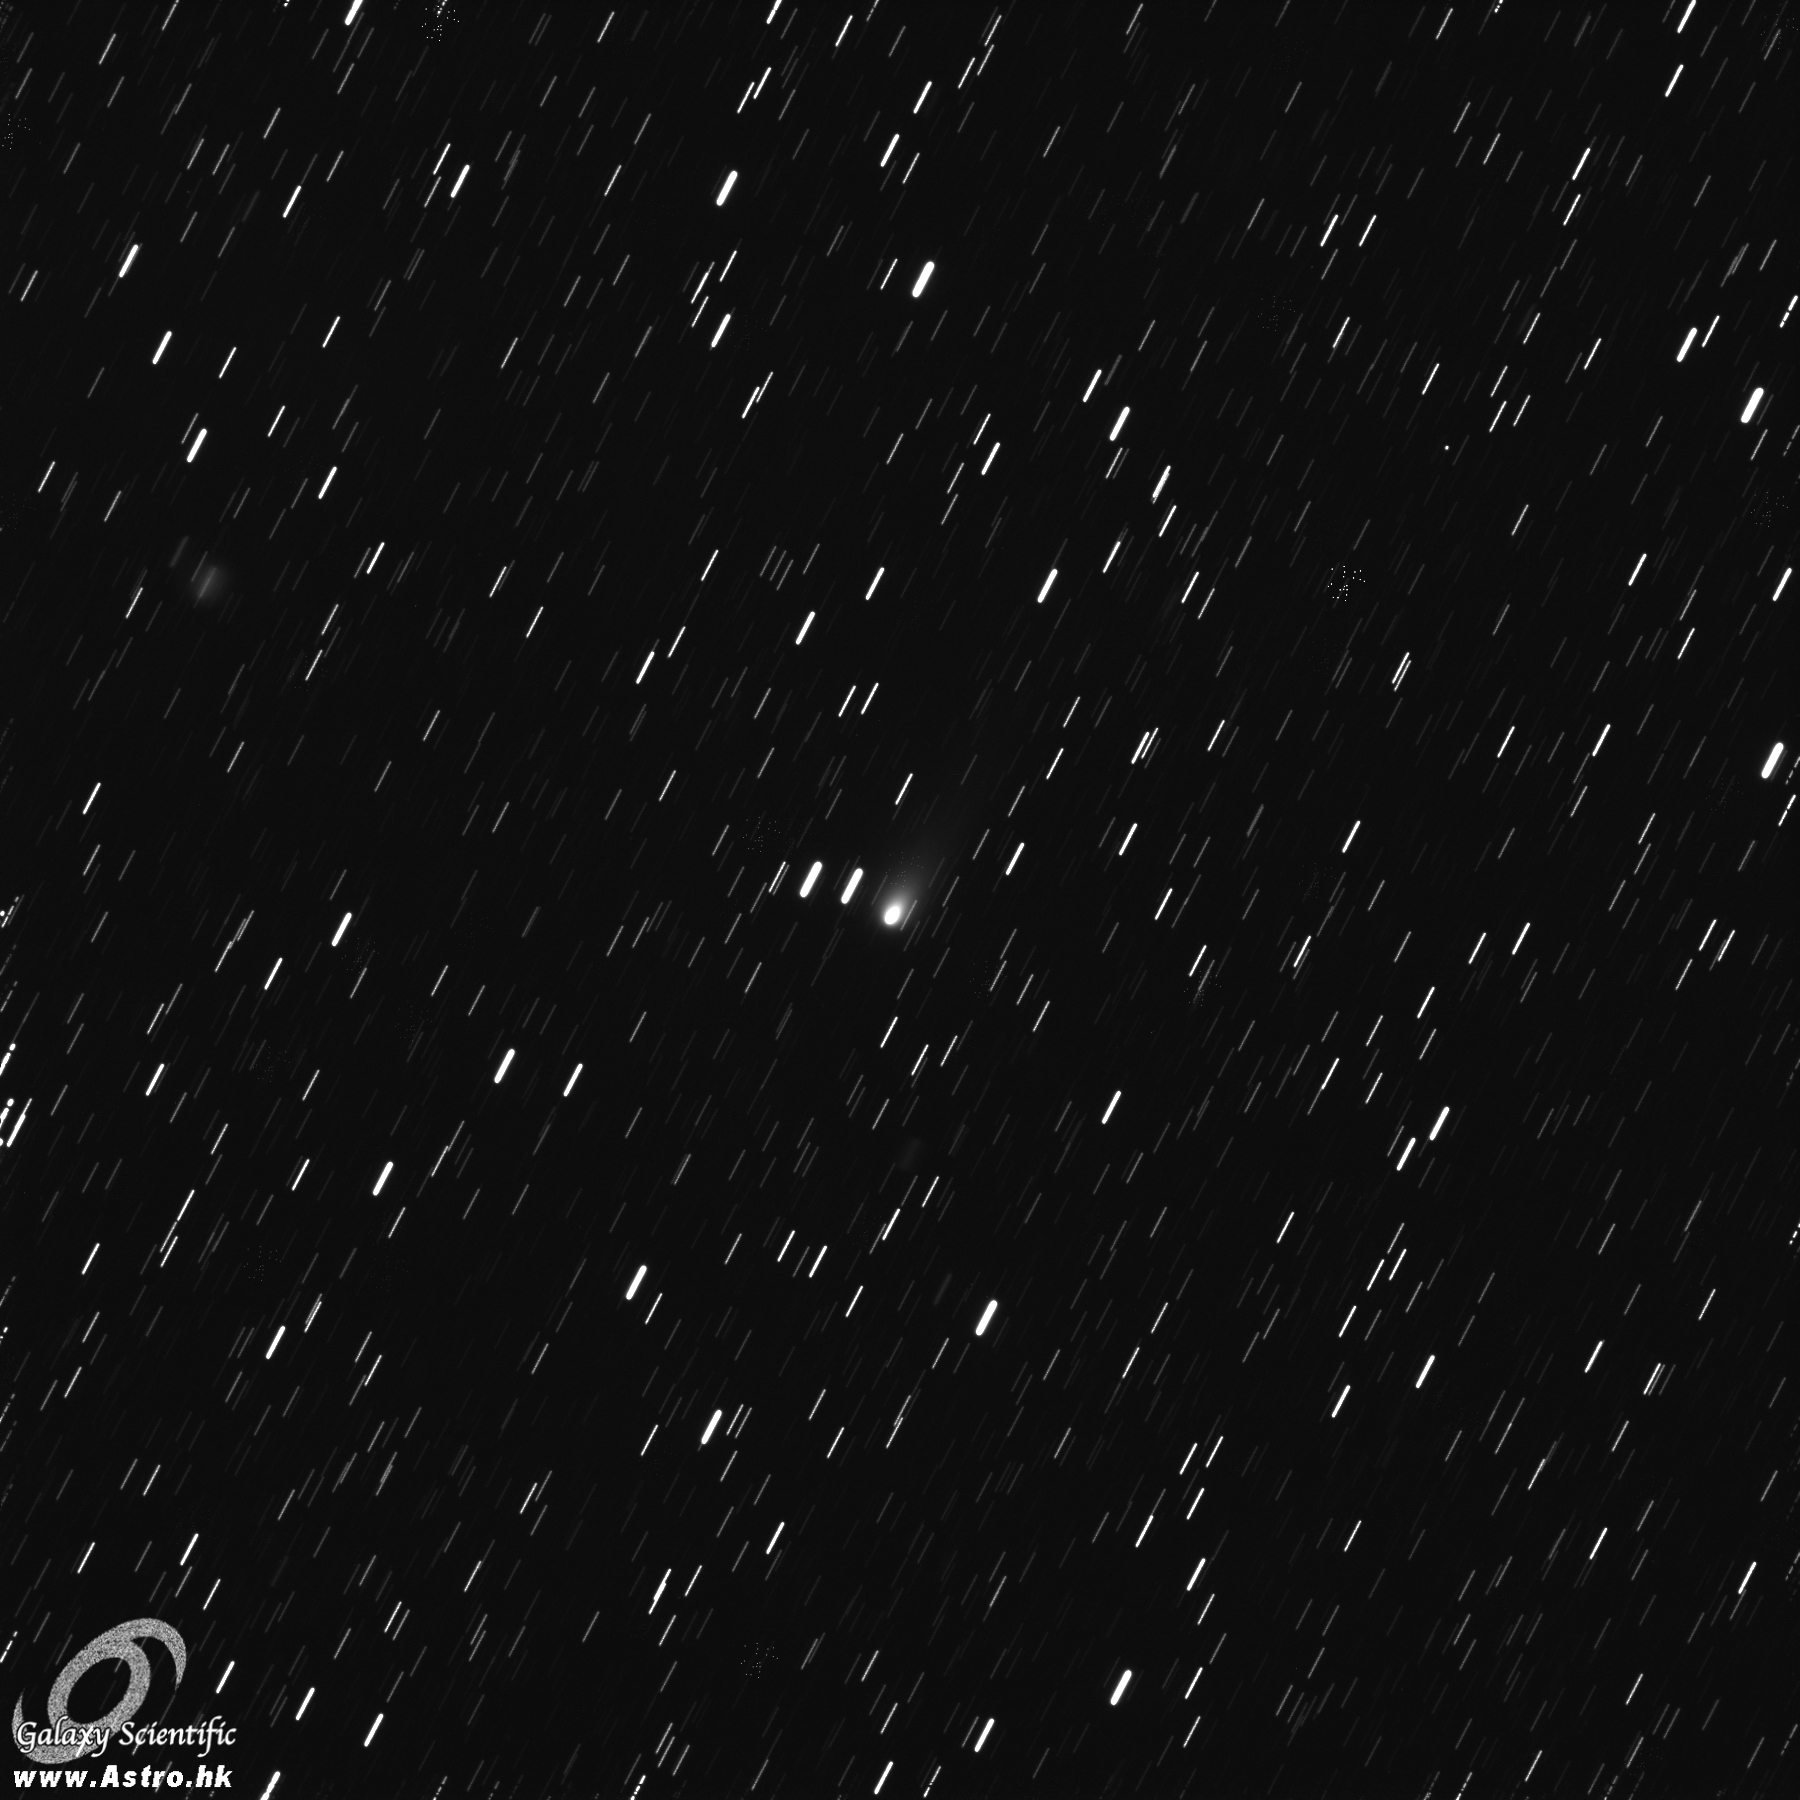 2012-10-16 Comet 168P 20x180s.JPG